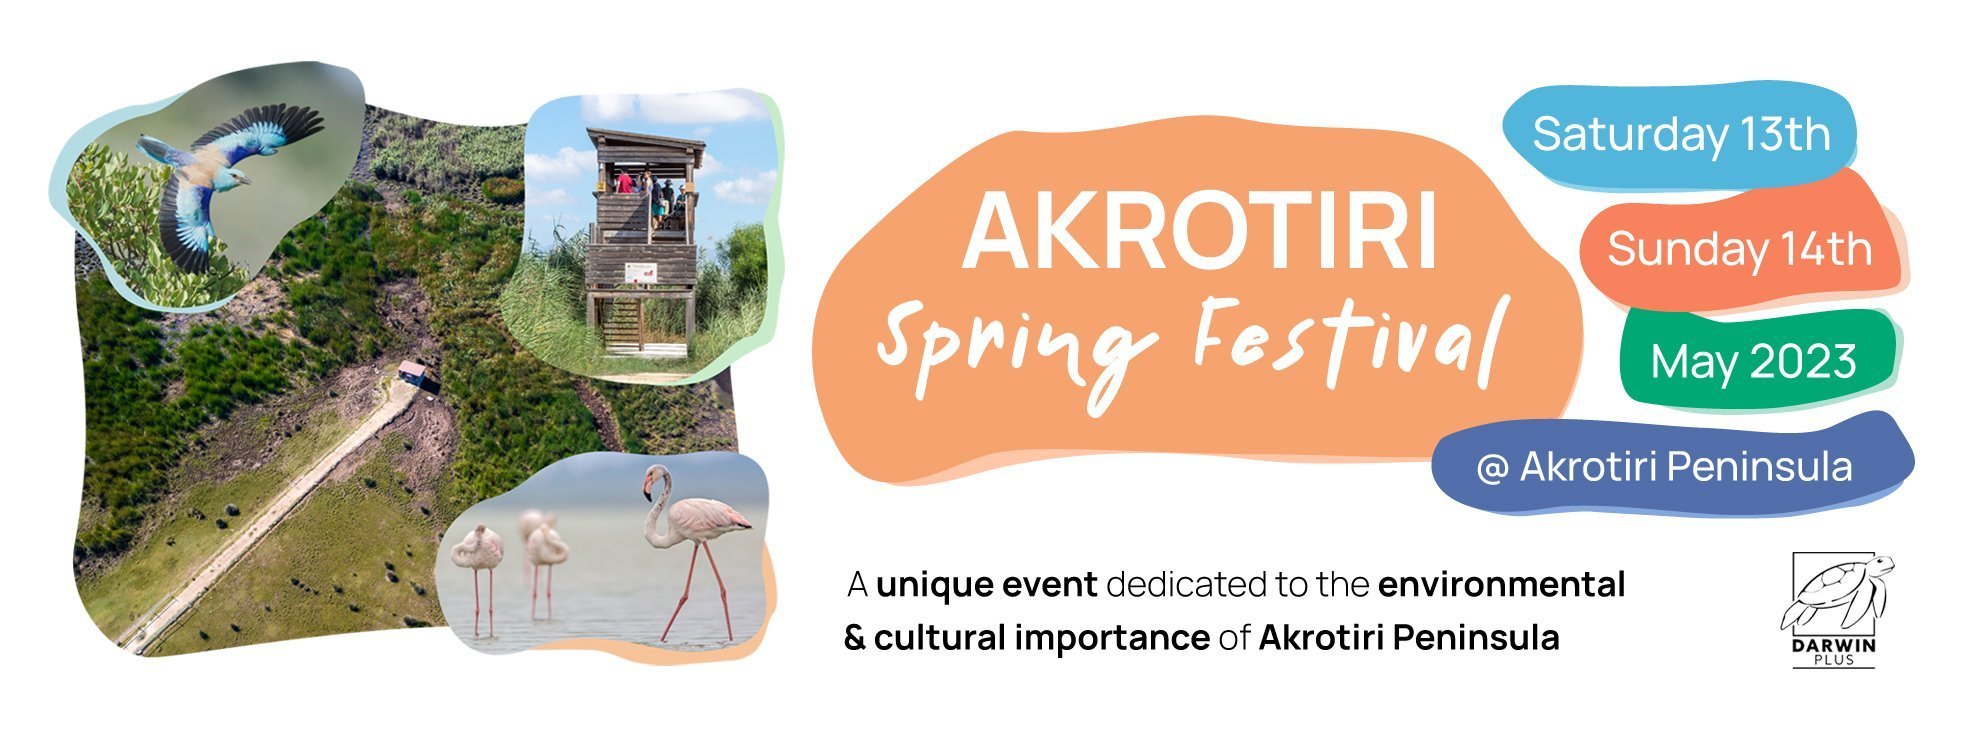 Akrotiri Spring Festival